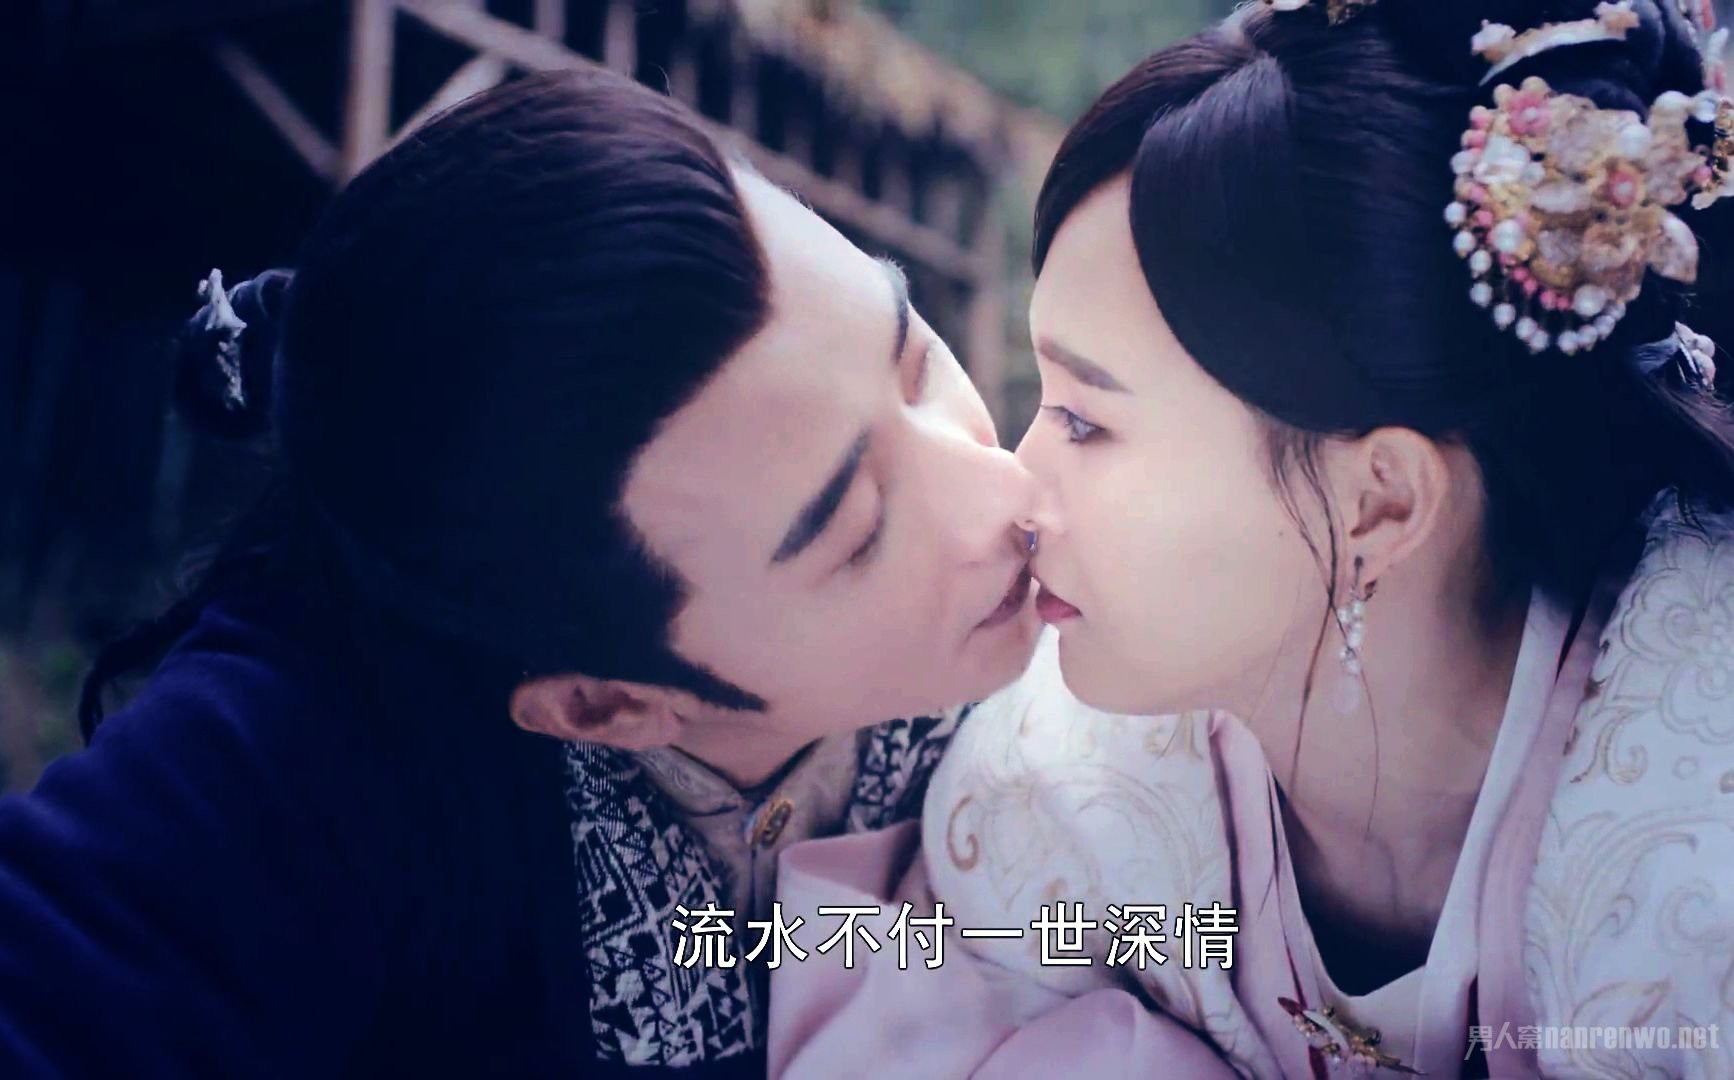 Đường Yên: Người xứng đáng với giải nữ hoàng kiss scene của màn ảnh Hoa Ngữ - Ảnh 19.